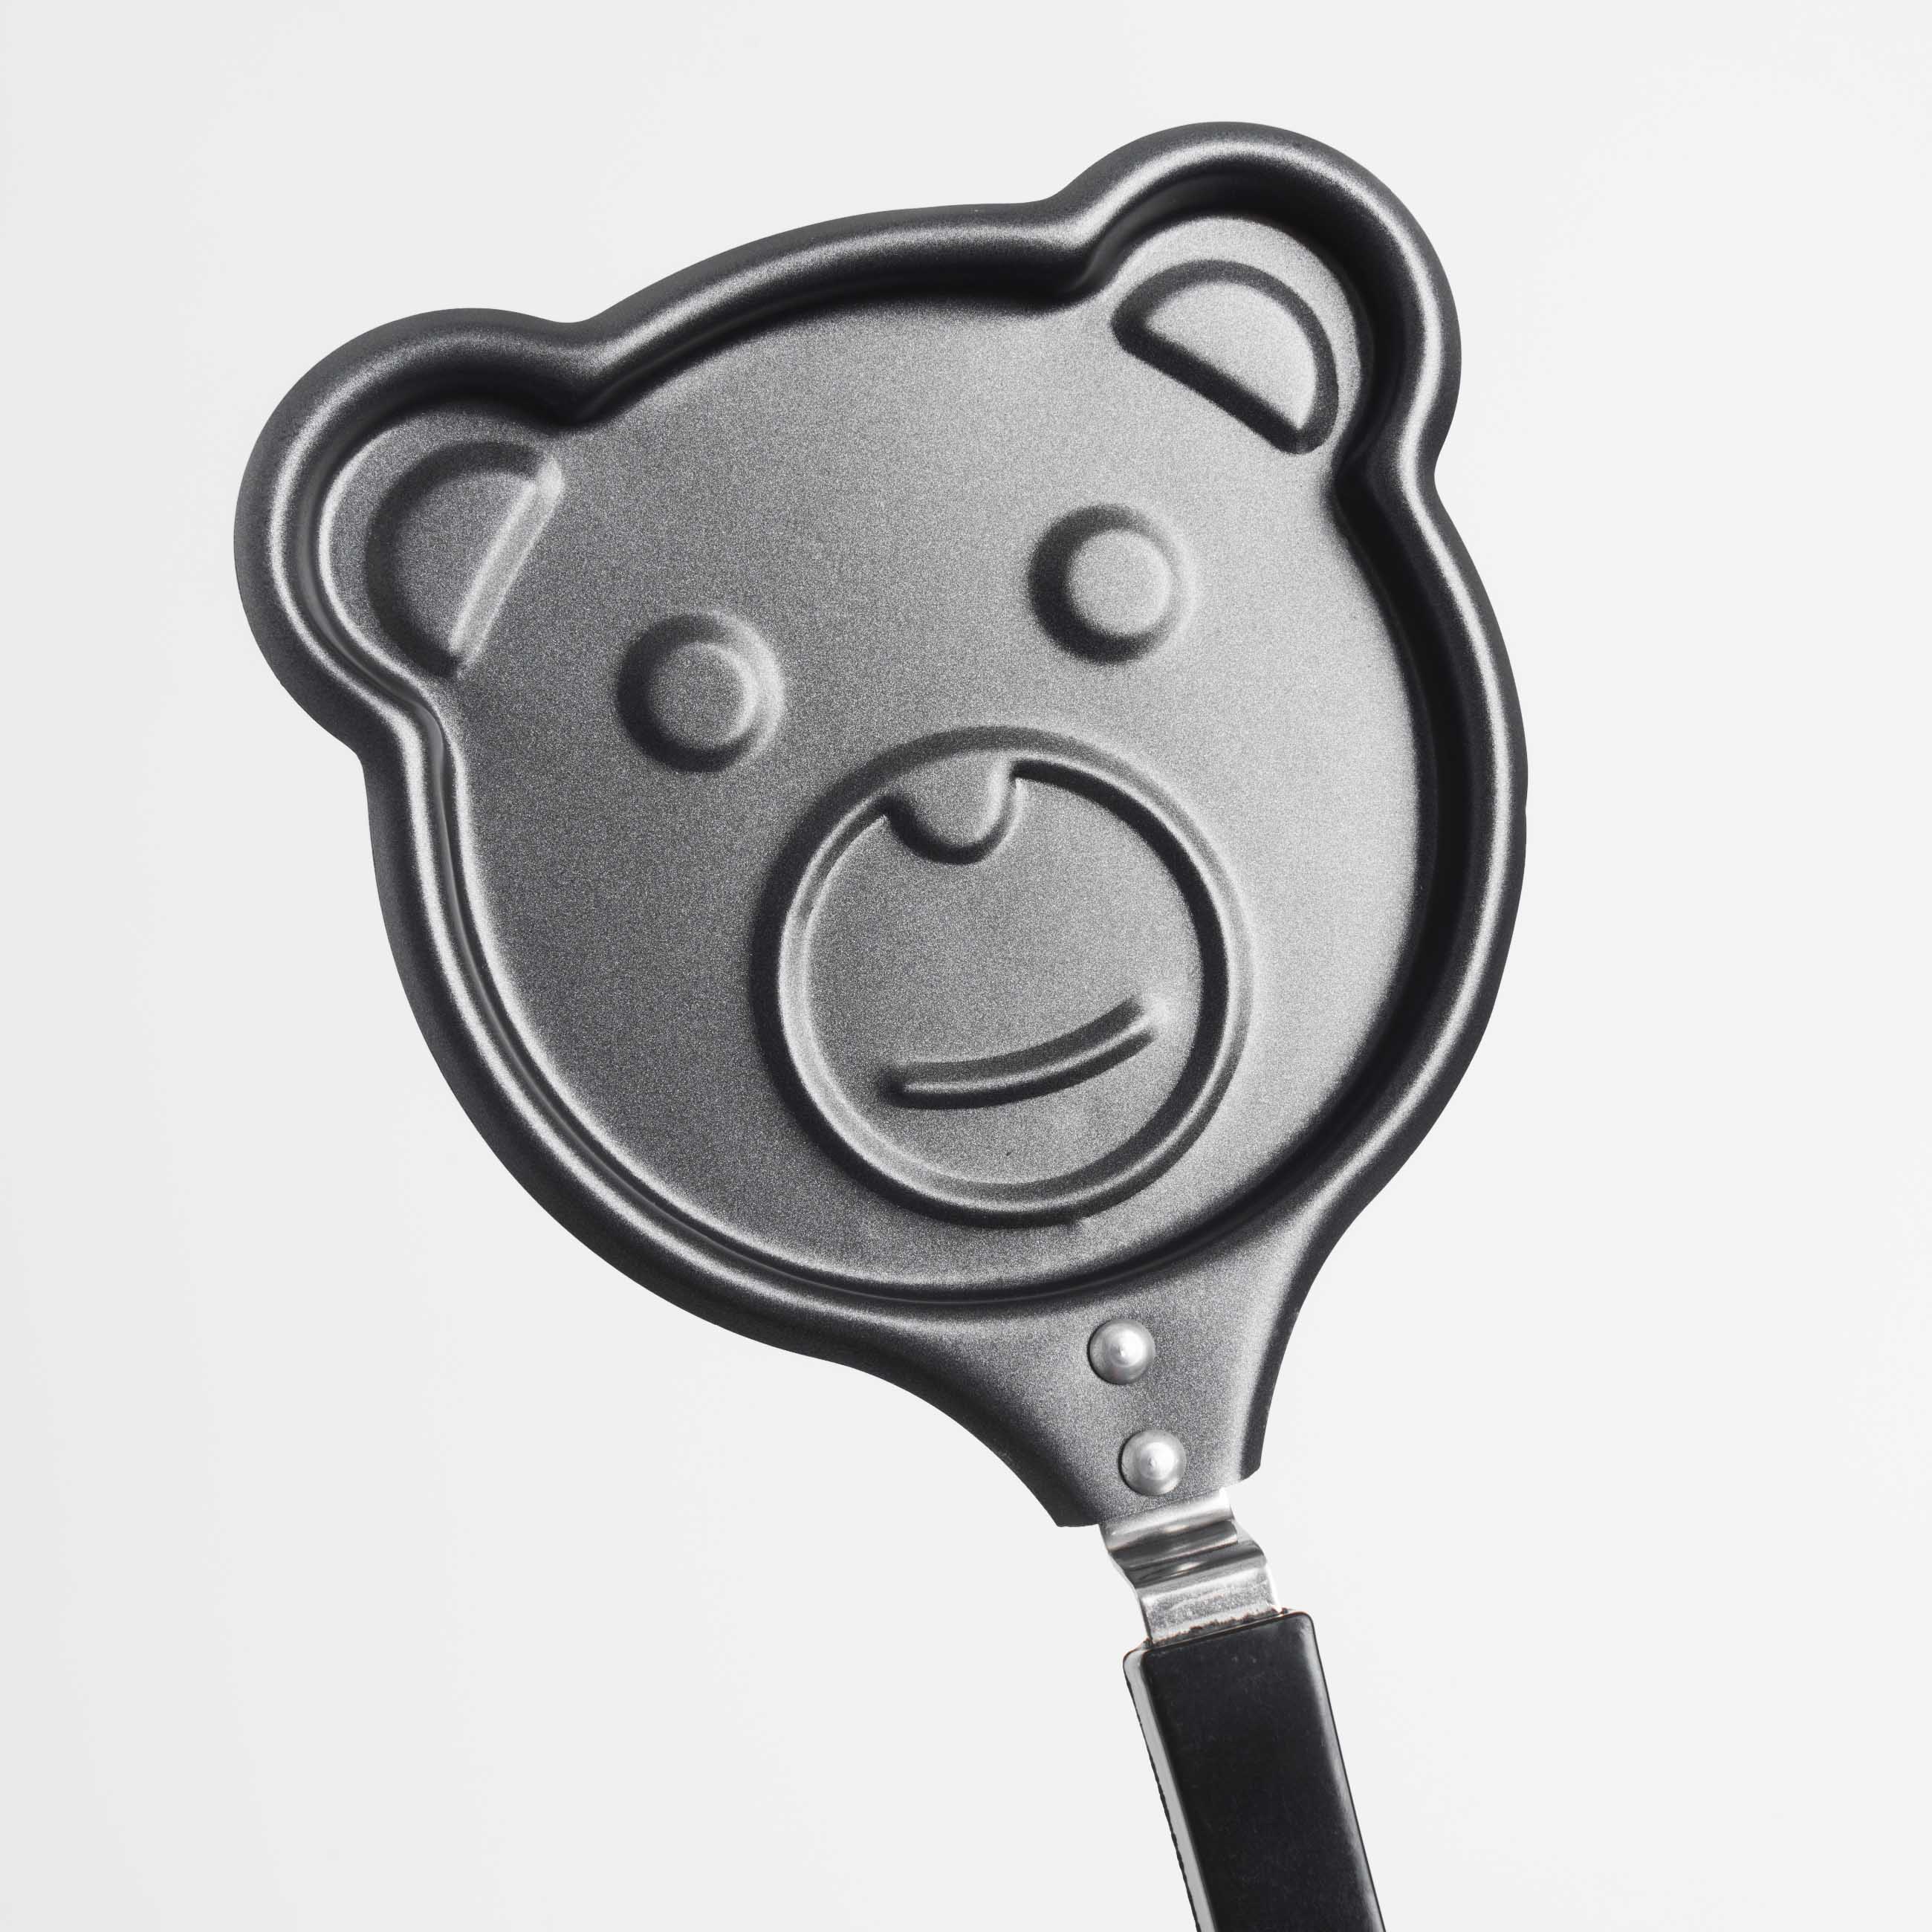 Сковорода для омлета и панкейков, 13 см, с покрытием, сталь, черная, Мишка, Bear изображение № 5